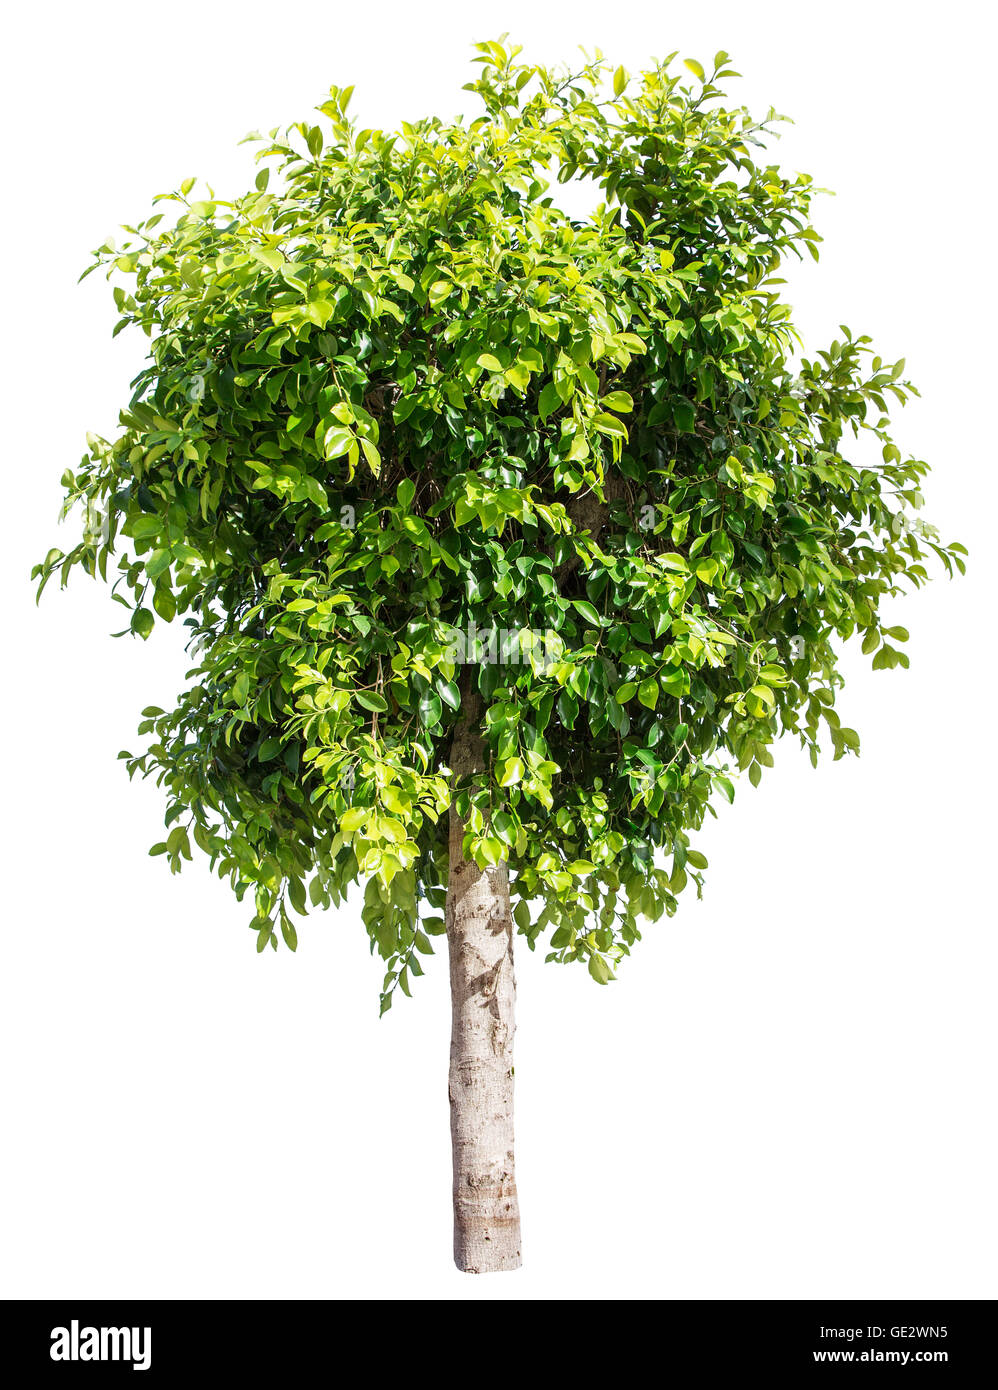 Ficus-Baum. Datei enthält Beschneidungspfade. Stockfoto